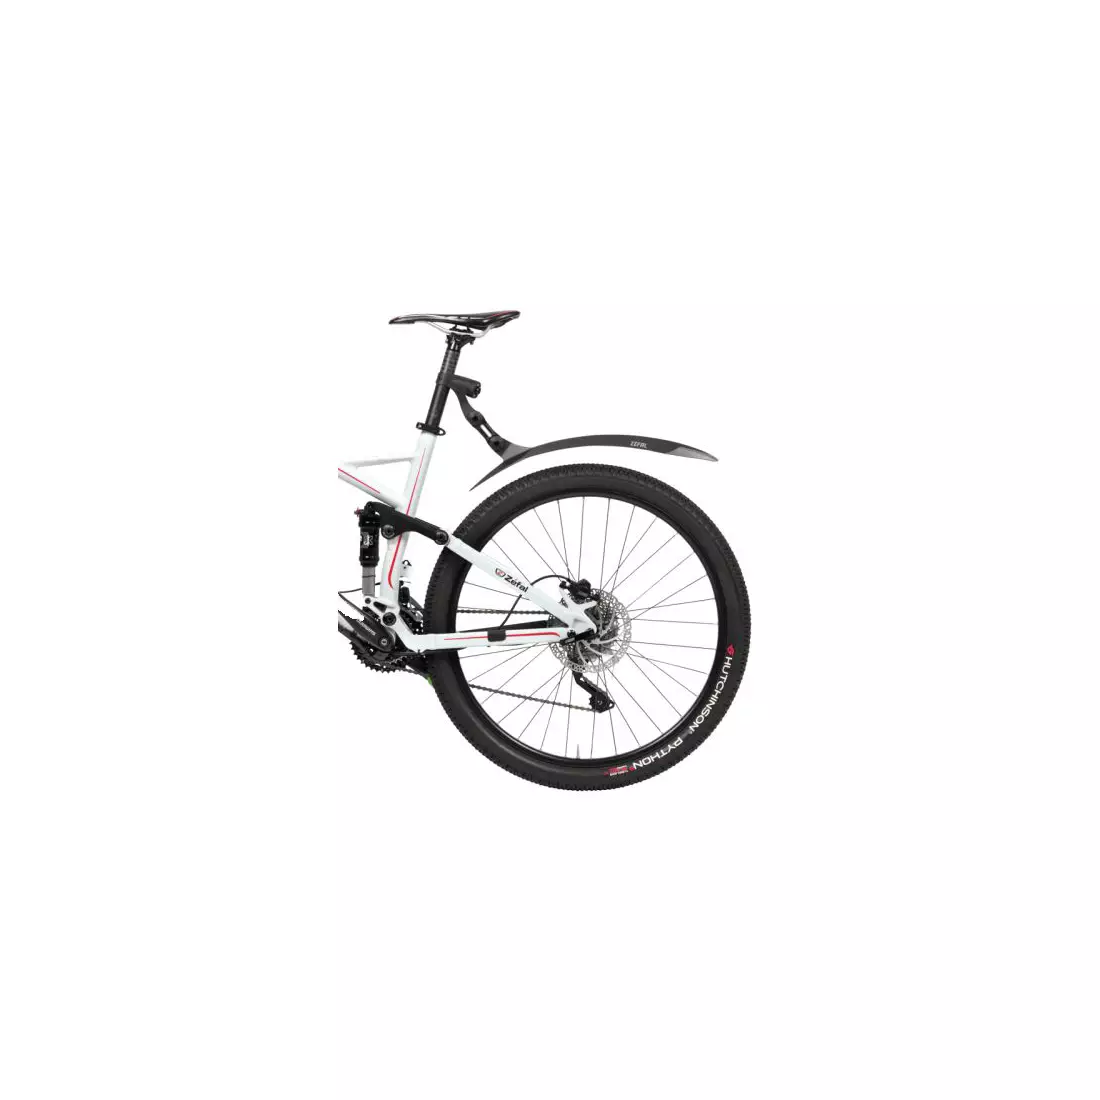 ZEFAL zadný blatník na bicykel DEFLECTOR RM 90+ black ZF-2532